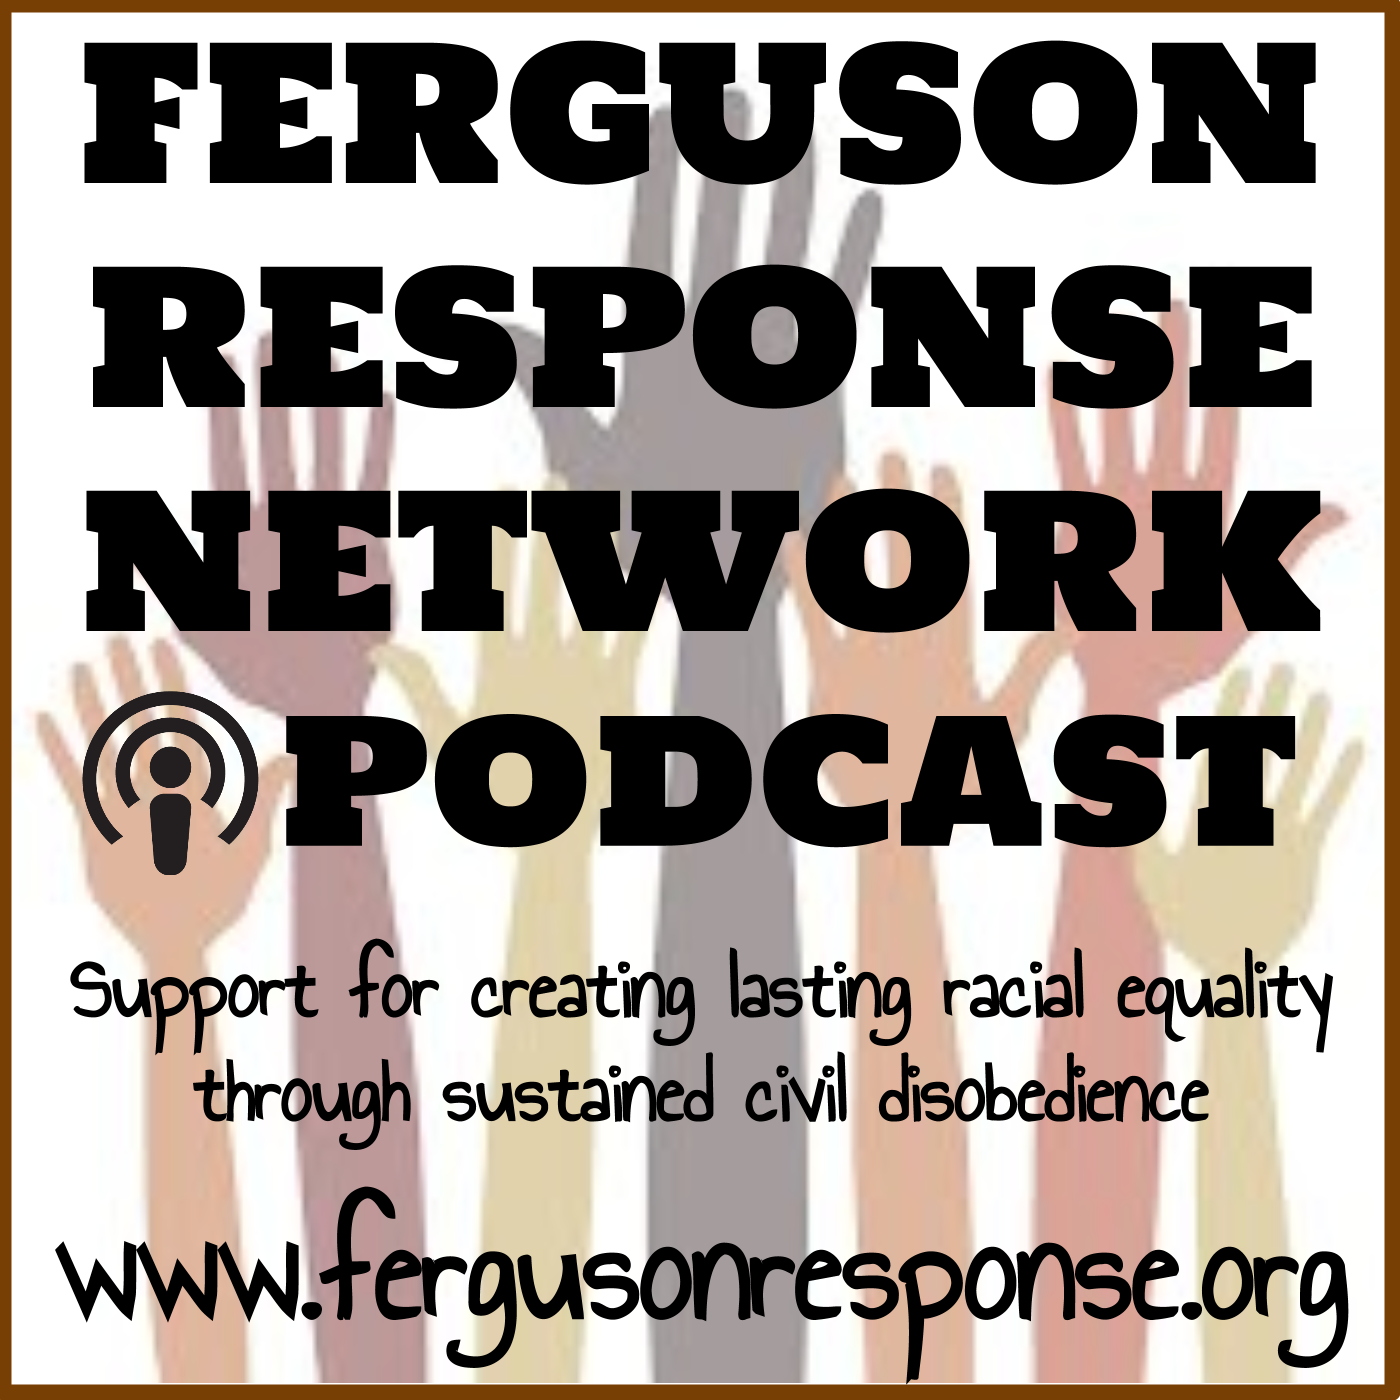 FRN Podcast – Ferguson Response Network